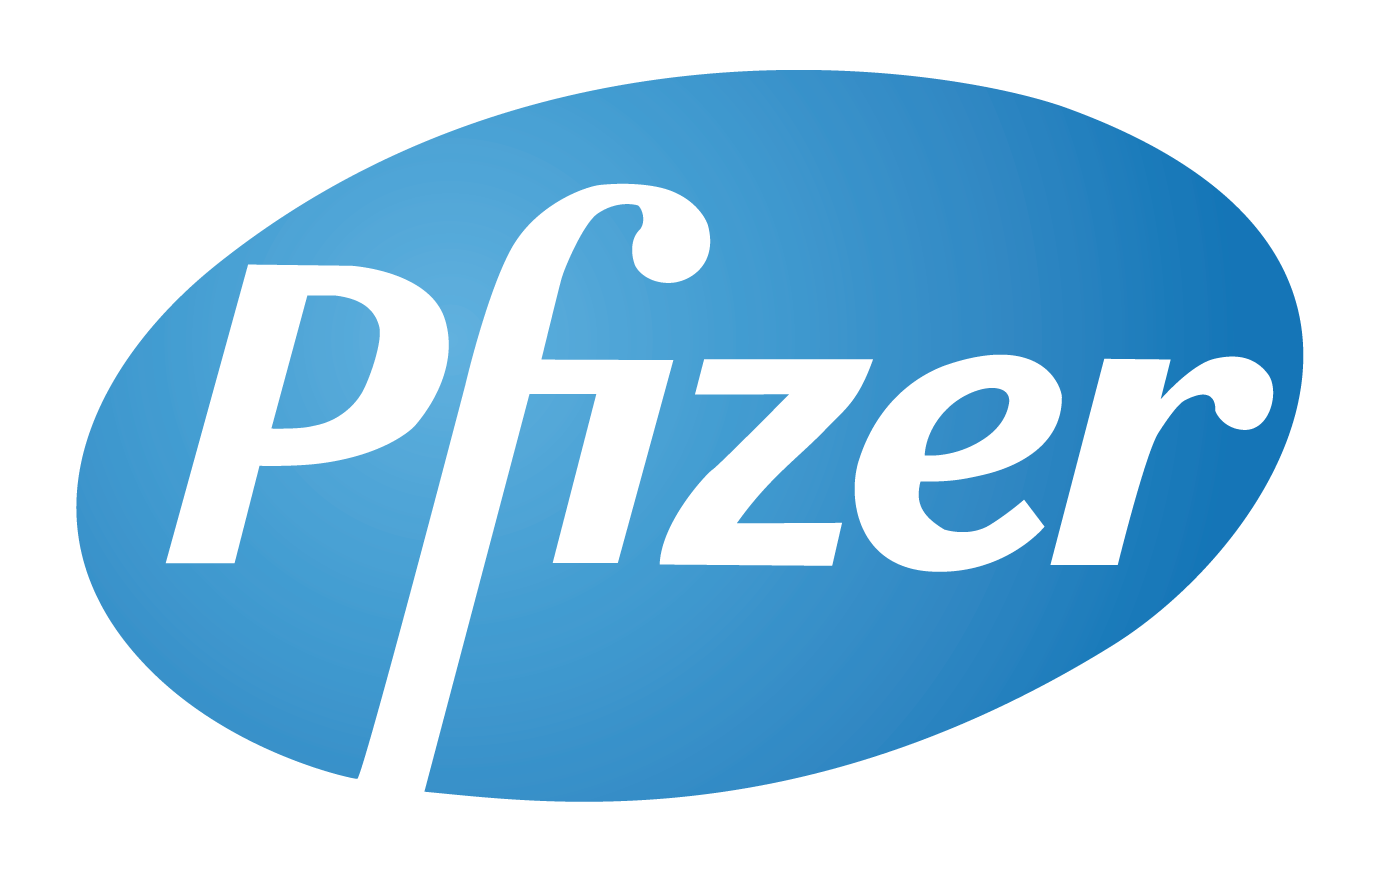 Pfizer technology strategy